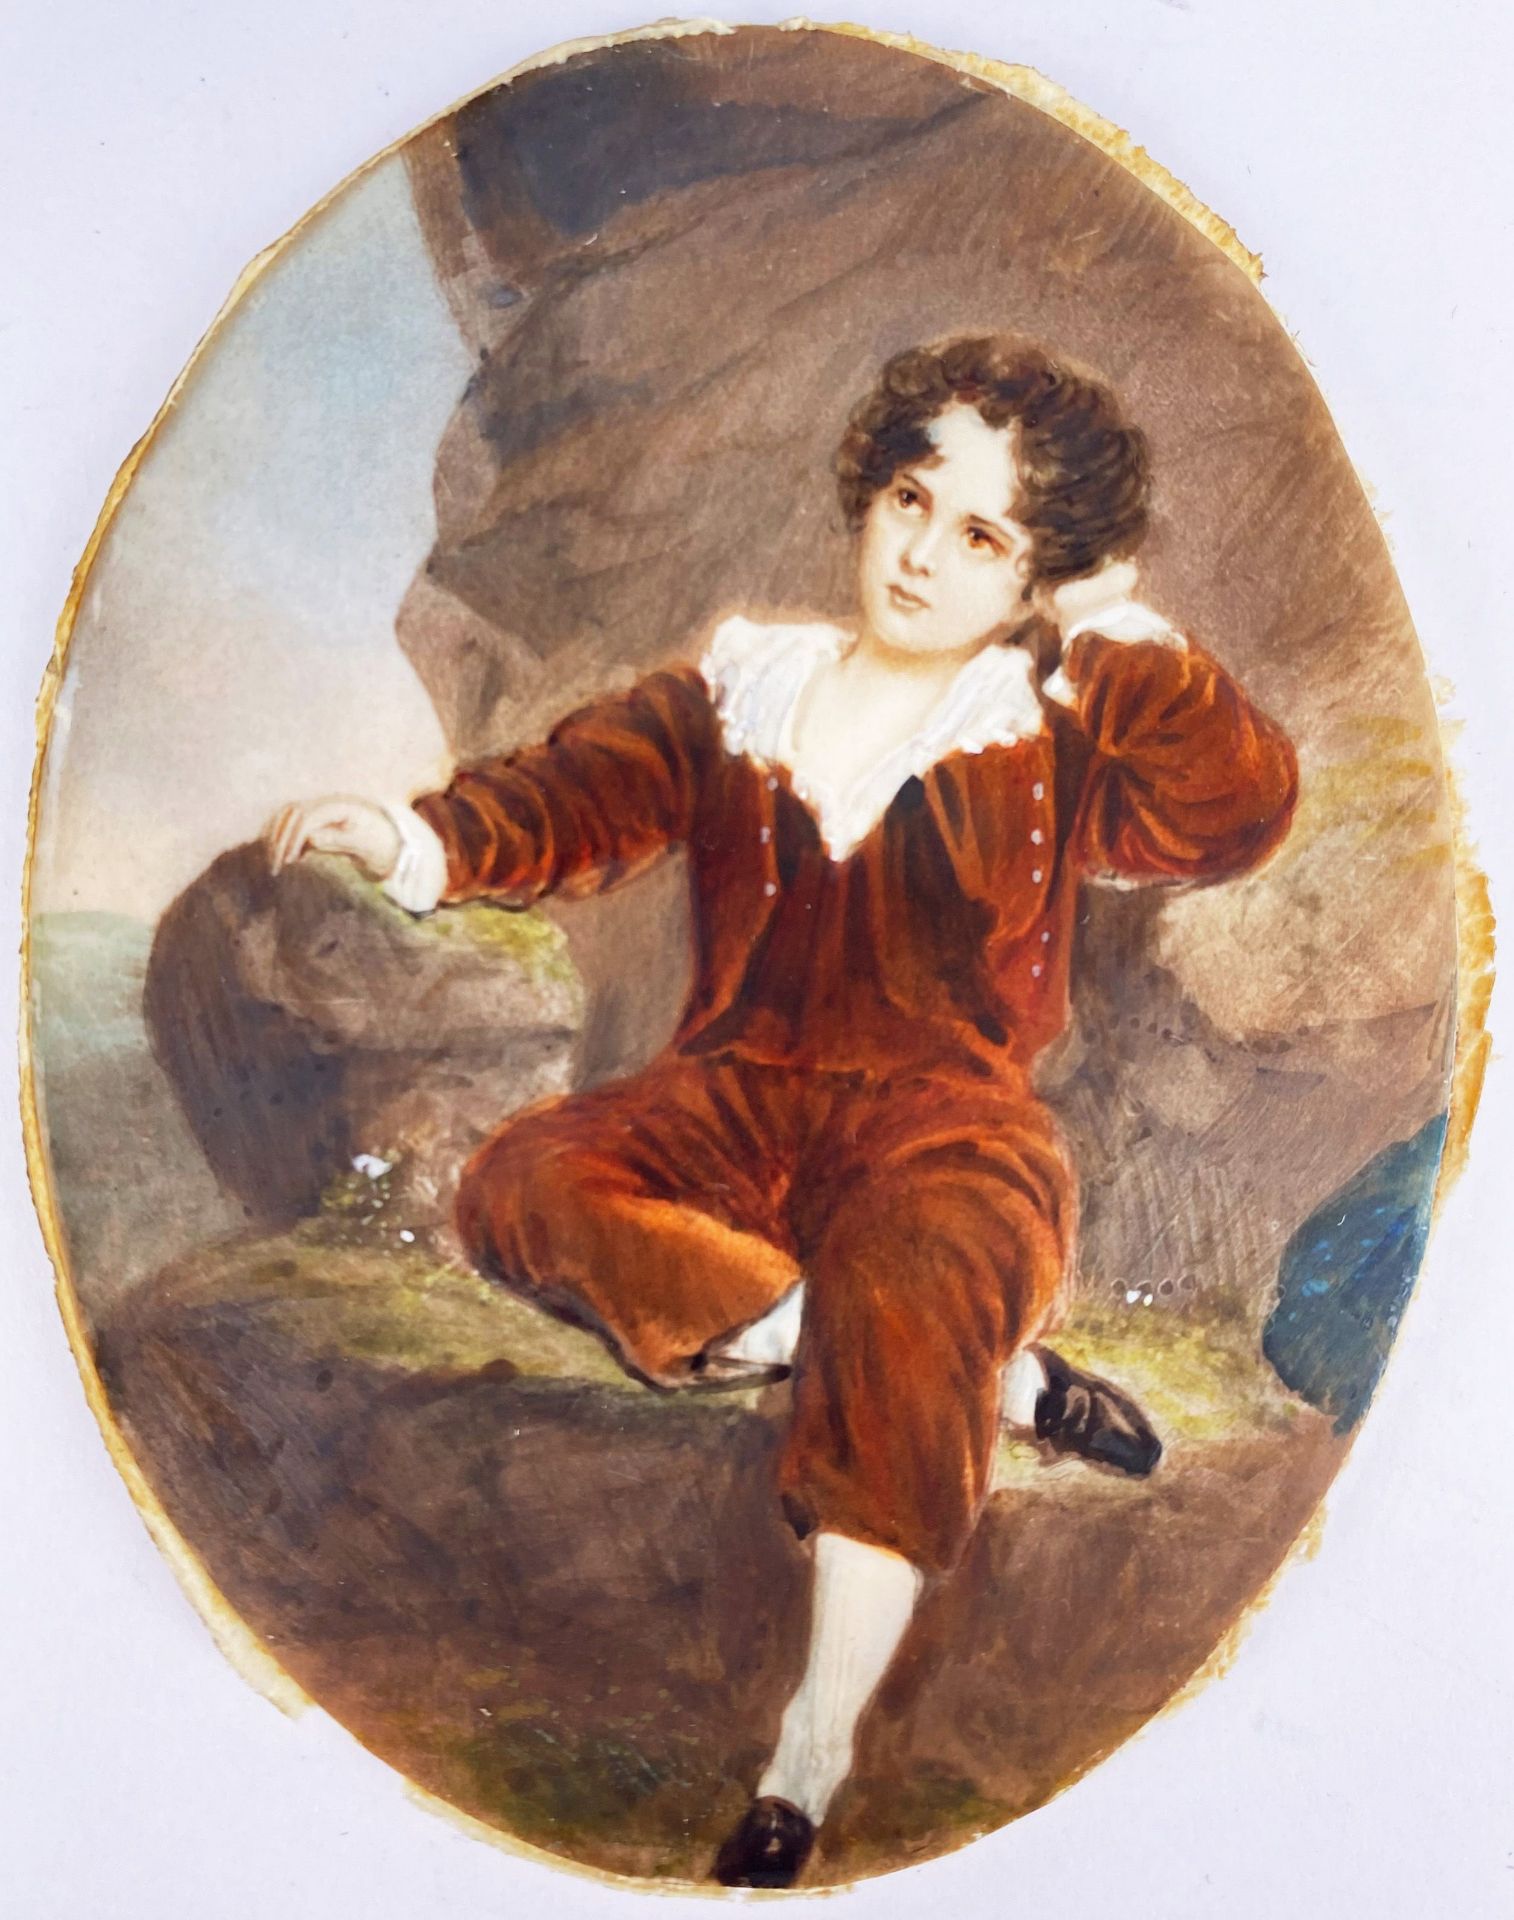 8 Miniaturen, Ölmalerei, 18./19. Jh.: ovale Miniatur, kleiner Junge in rotem Gewand vor einer - Bild 6 aus 20